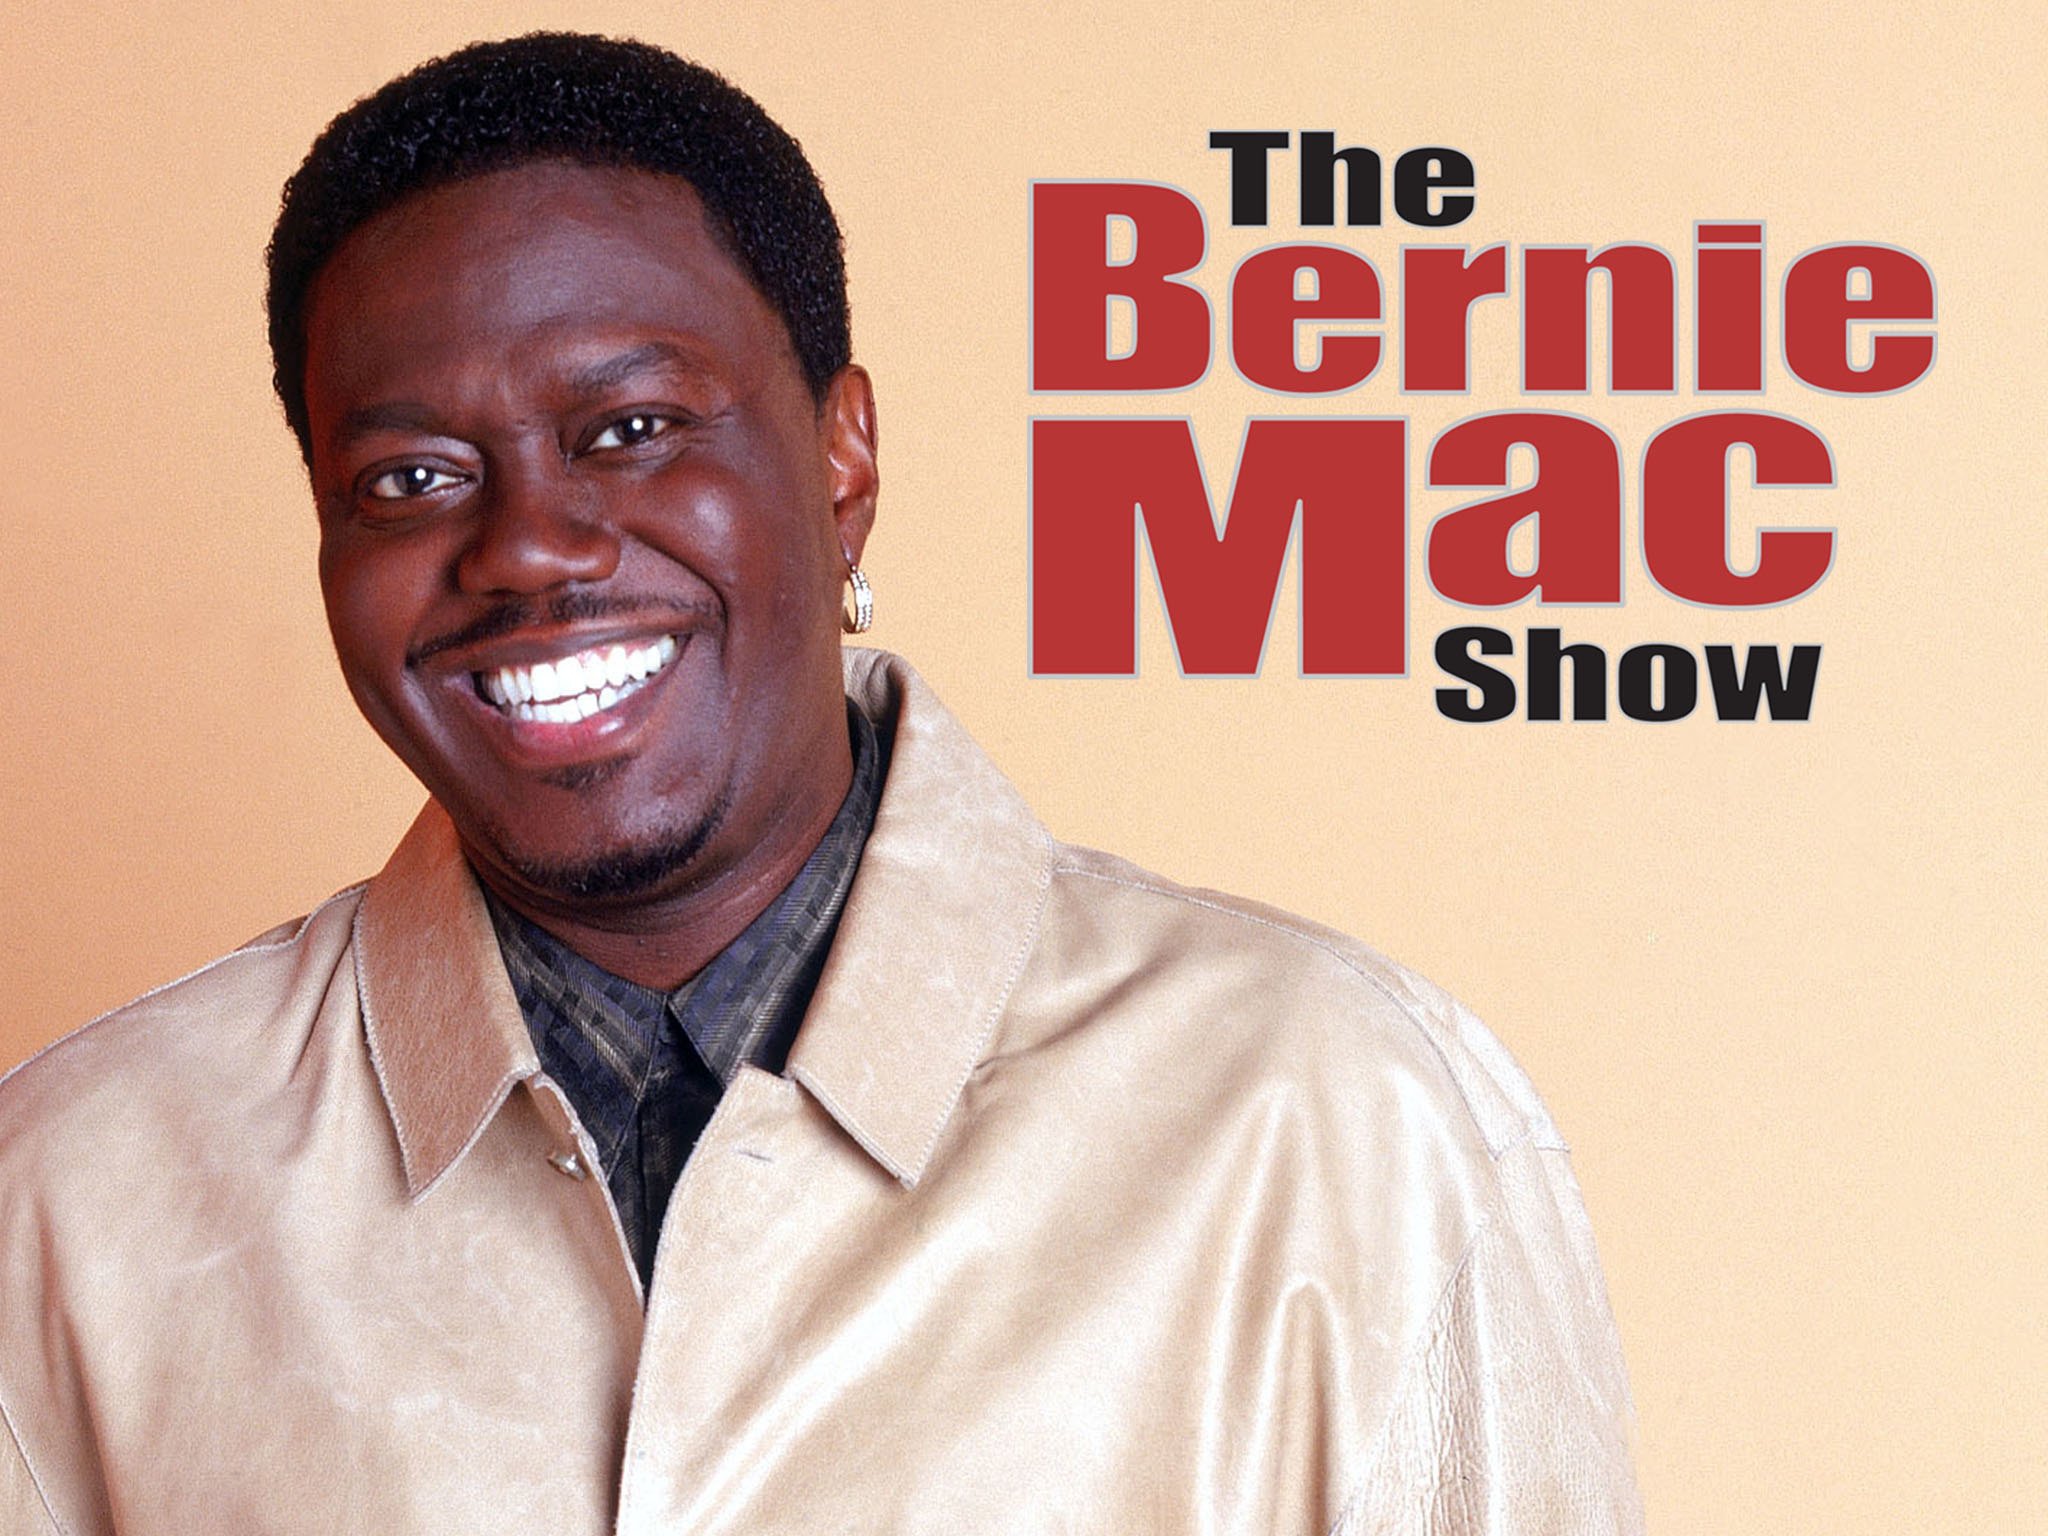 Bernie mac show